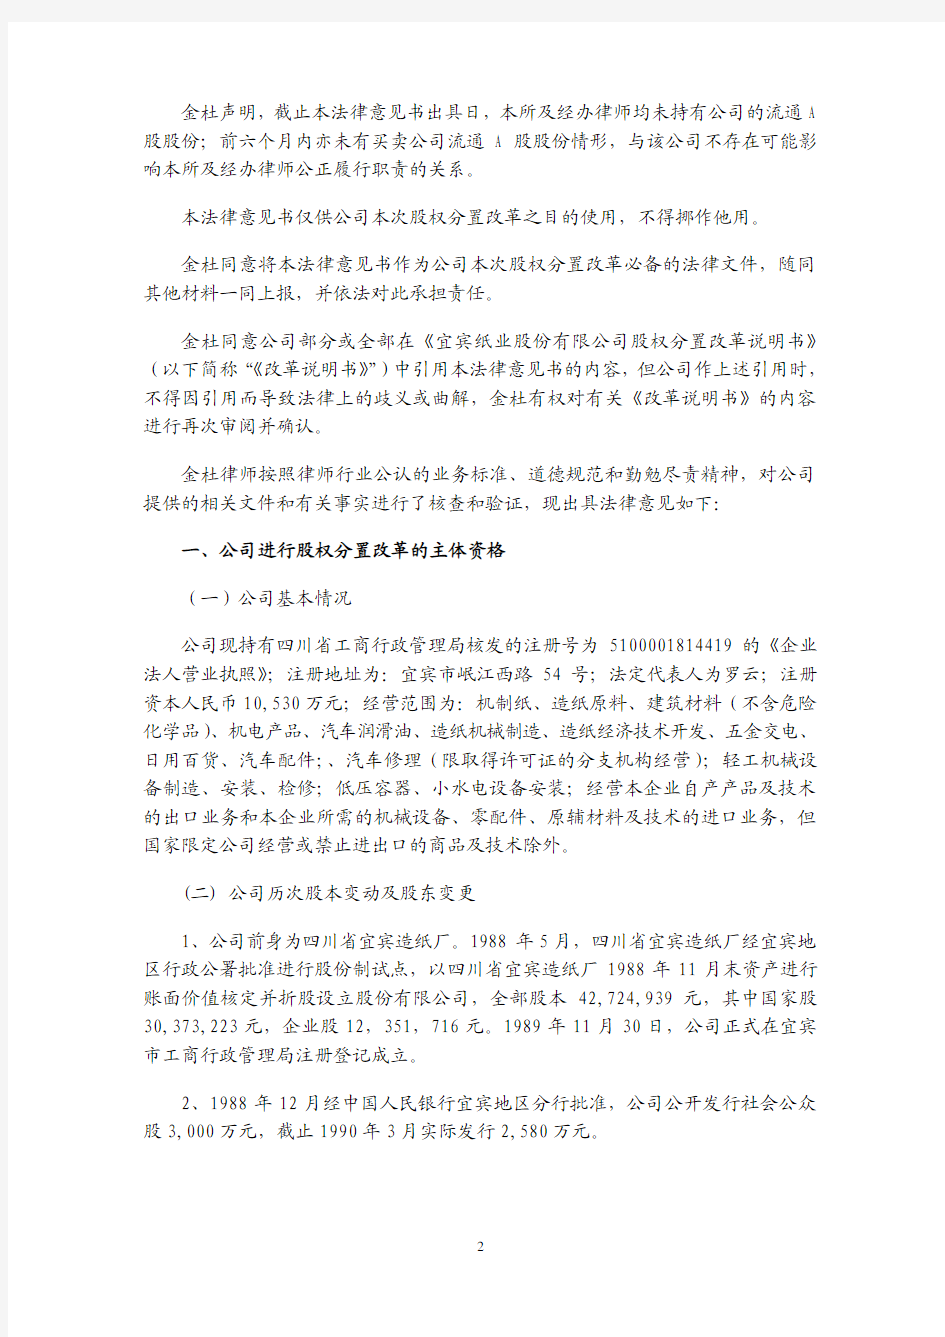 北京市金杜律师事务所四川分所关于宜宾纸业股份有限公司股权分置改革的法律意见书